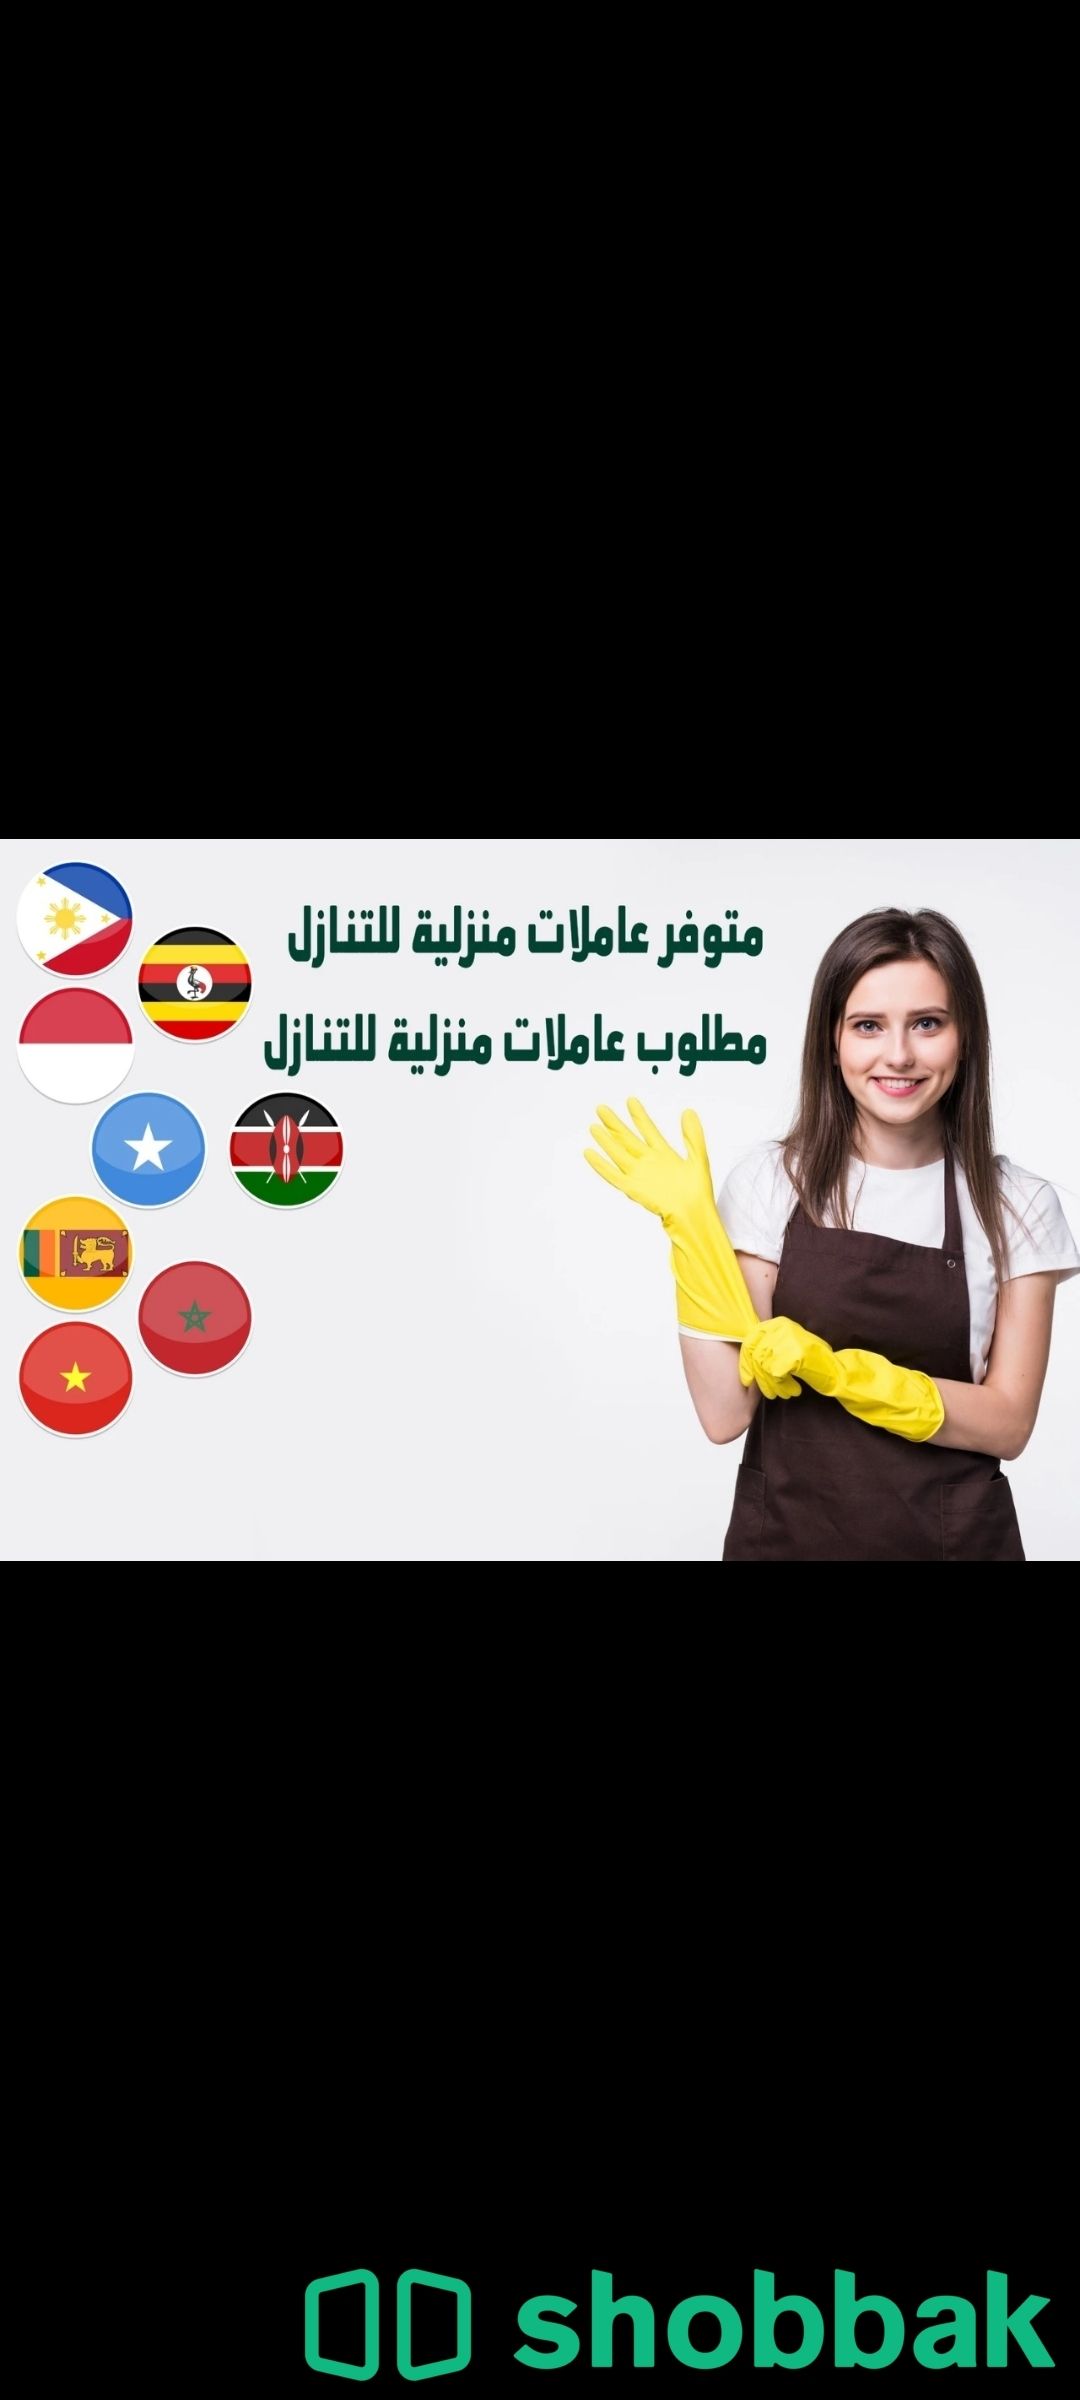 يوجد ومطلوب عاملات وطباخات للتنازل بافضل الاسعار 0536747079 Shobbak Saudi Arabia